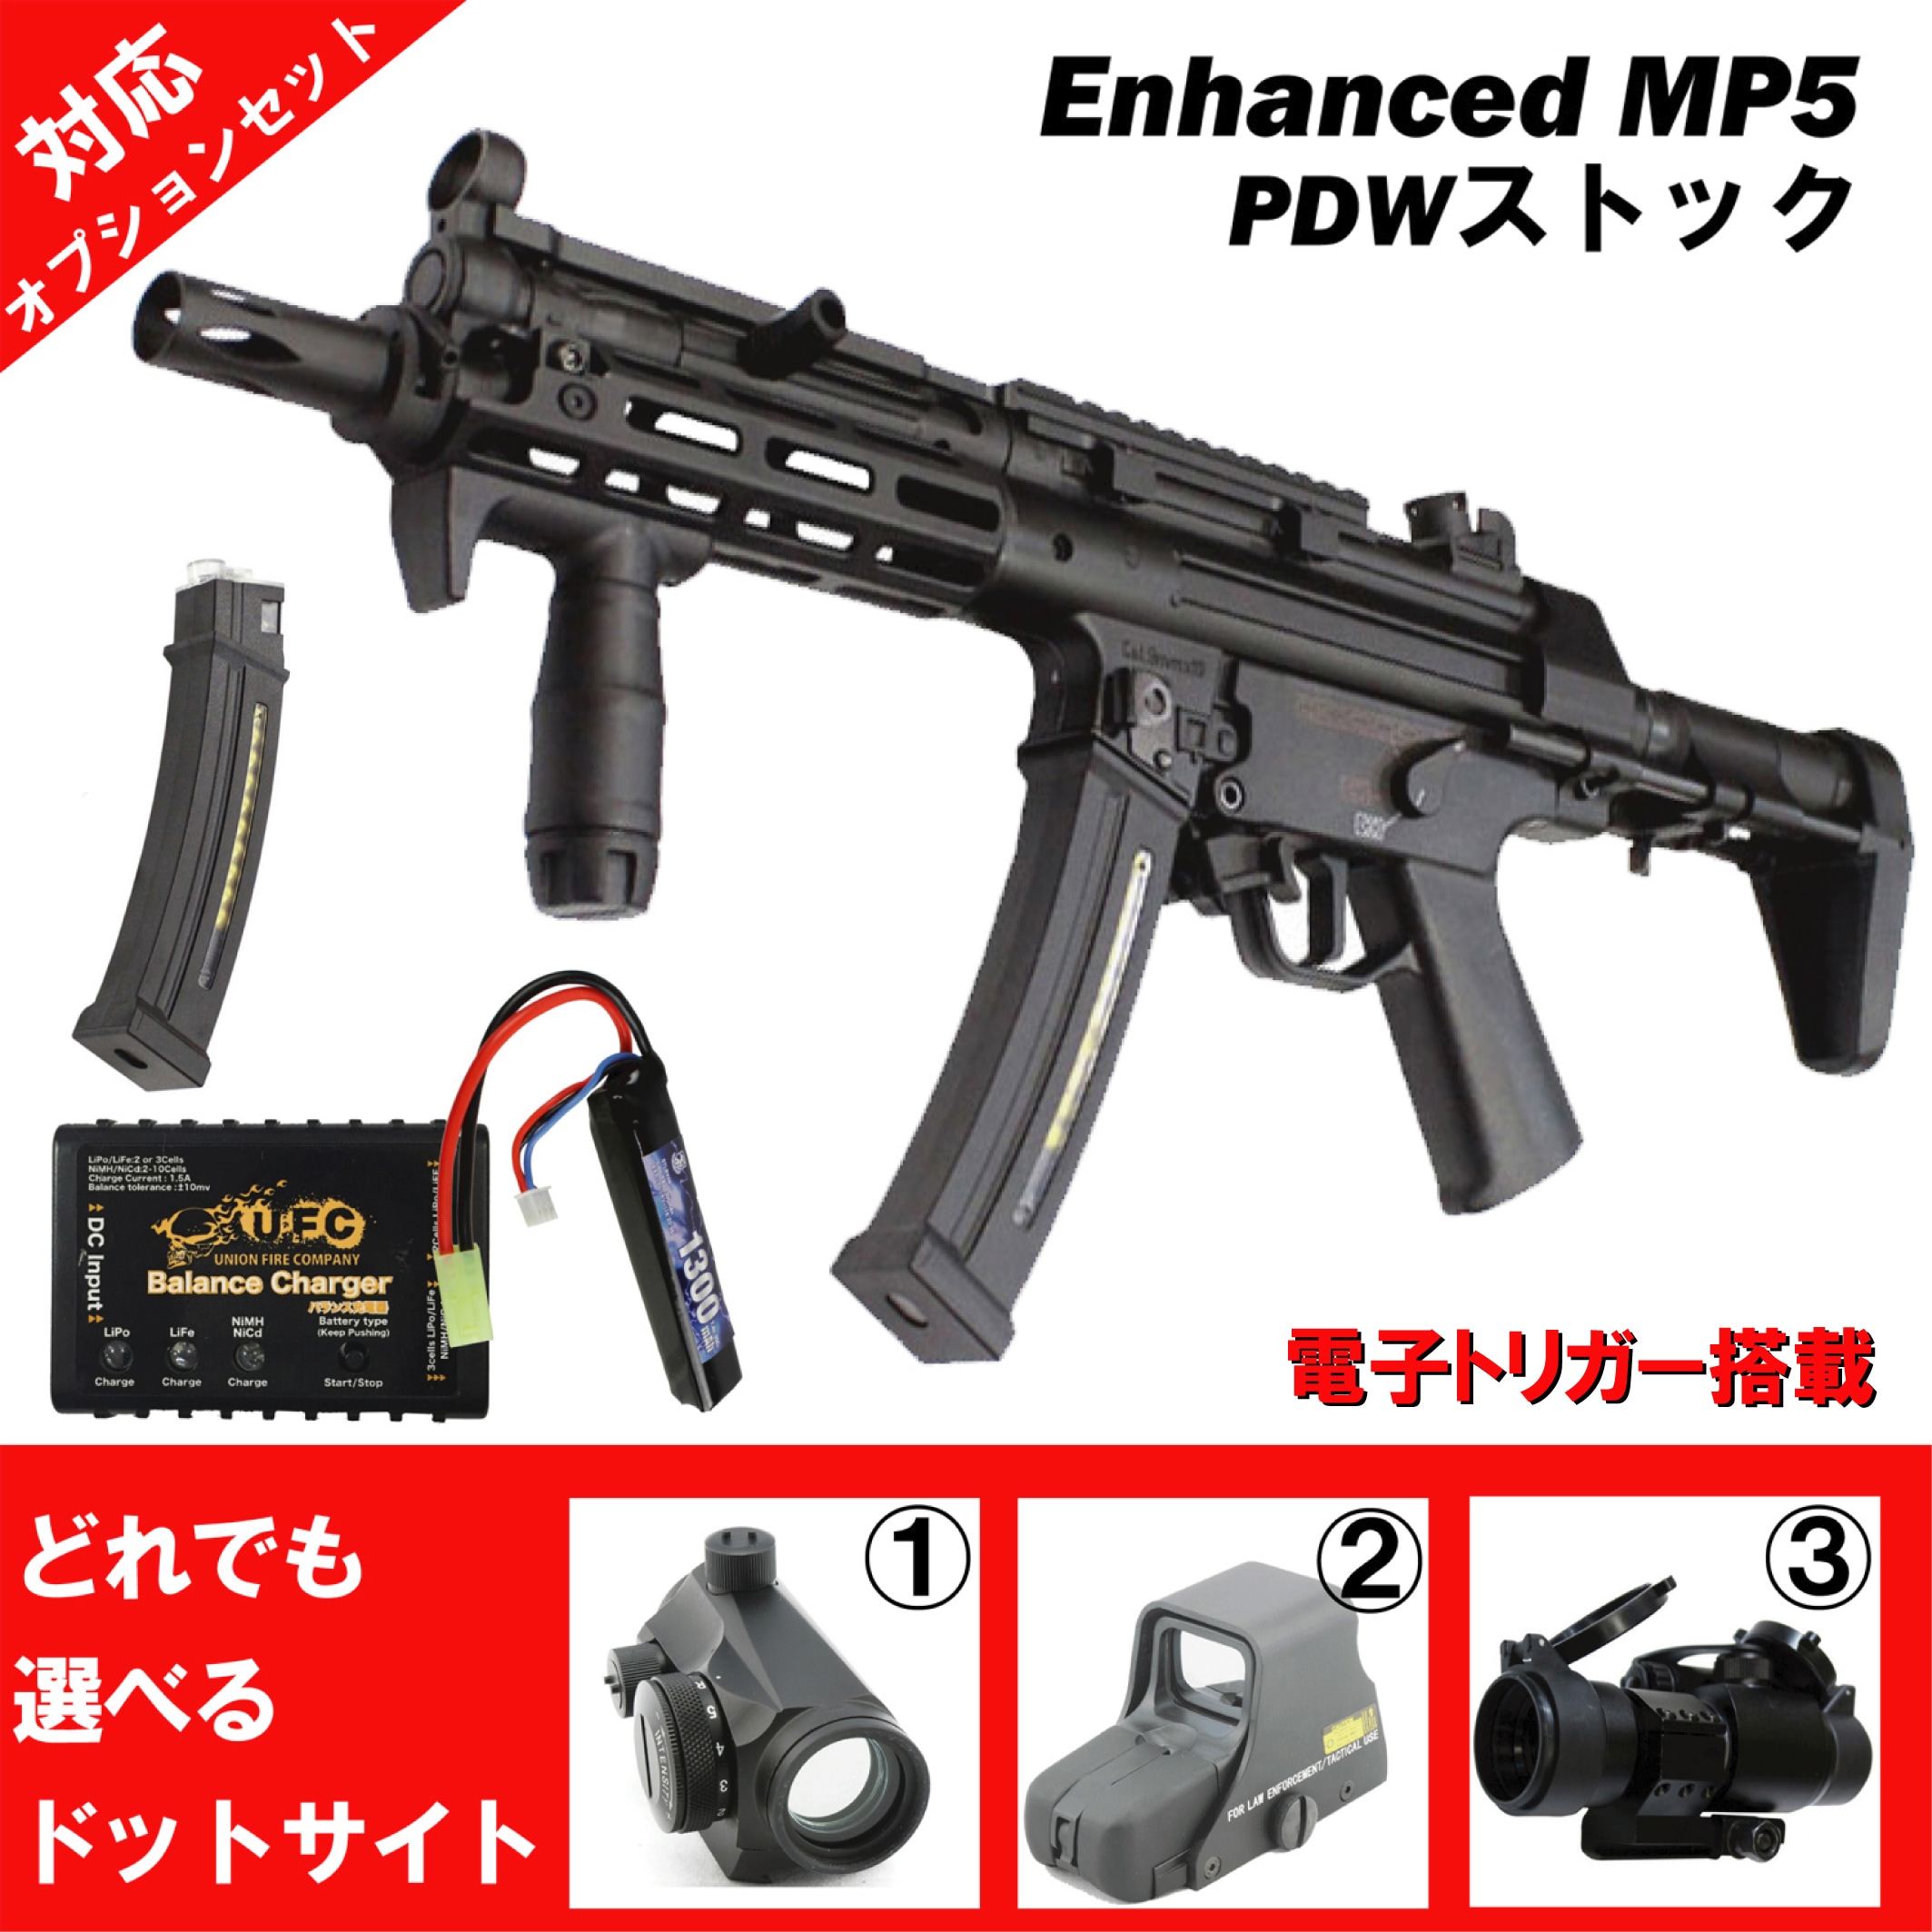 フォースターBOX】CME041G Enhanced MP5 PDWストック フルメタルETU 